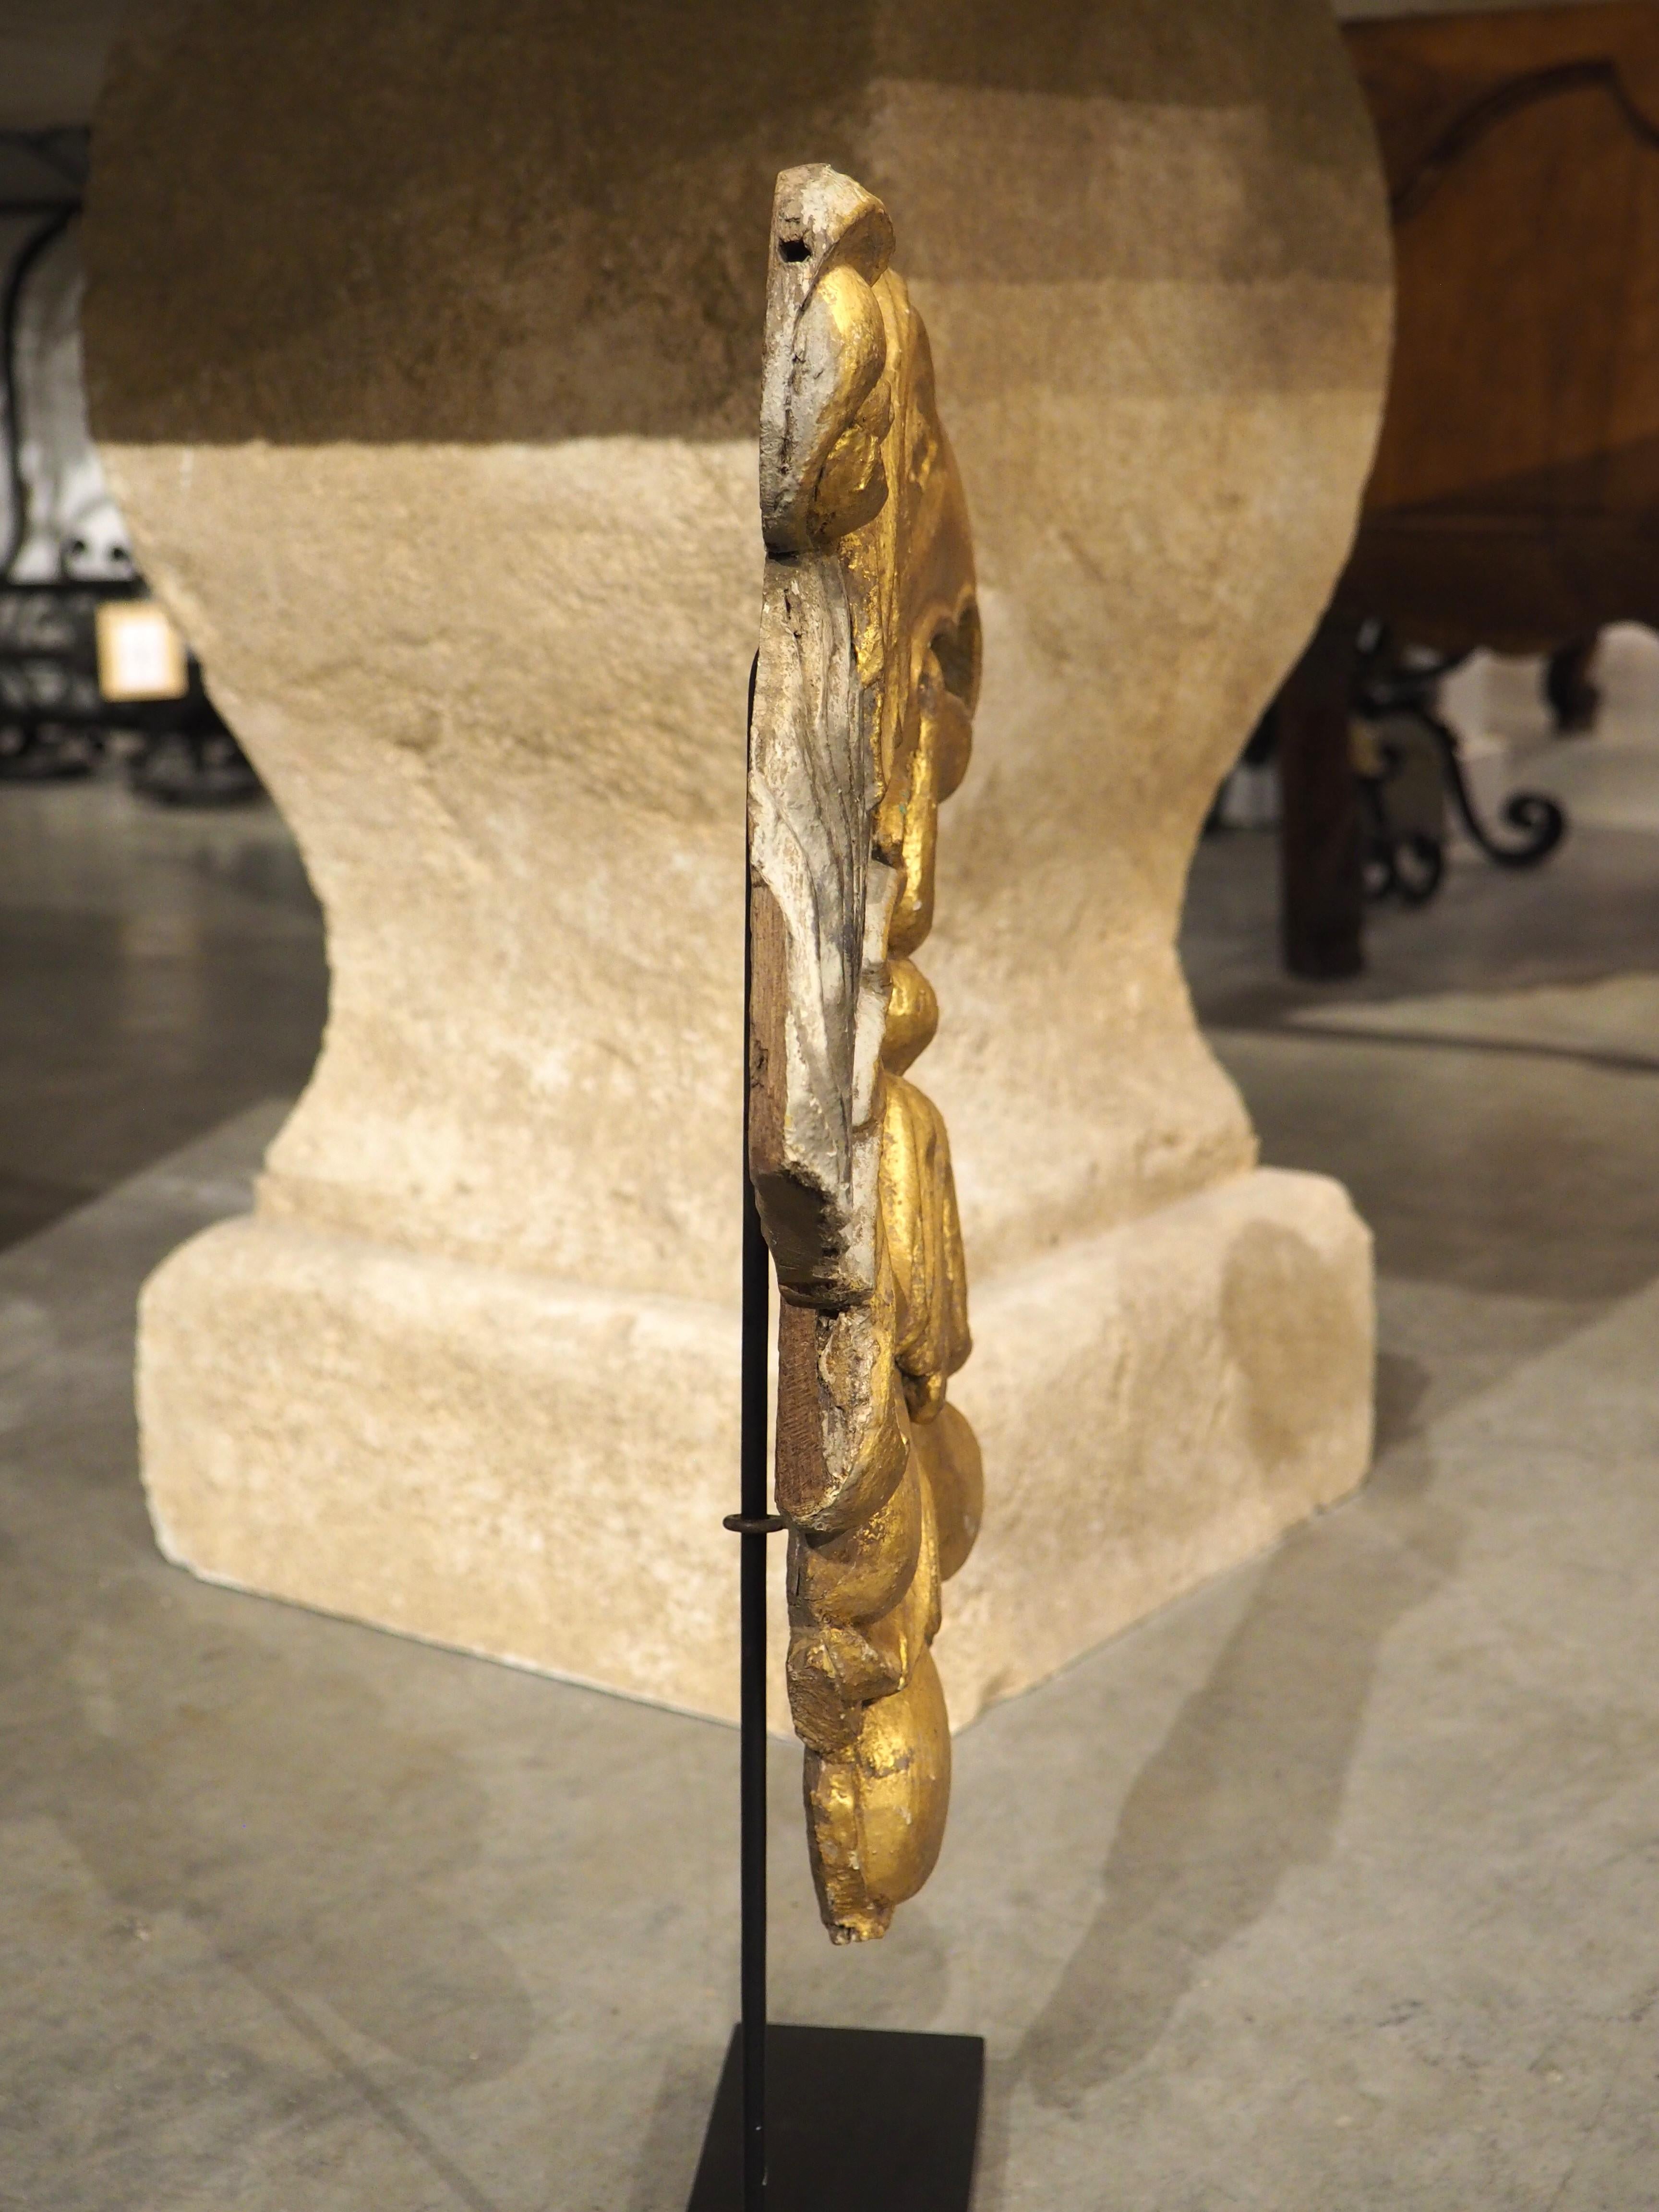 Dieser große geschnitzte Adlerkopf aus Goldholz wurde um 1750 in Italien handgeschnitzt und in jüngerer Zeit auf einen schwarz lackierten Ständer mit einem dünnen Metallarm montiert. Der Vogel hat einen großen, von seinem Schnabel herabhängenden